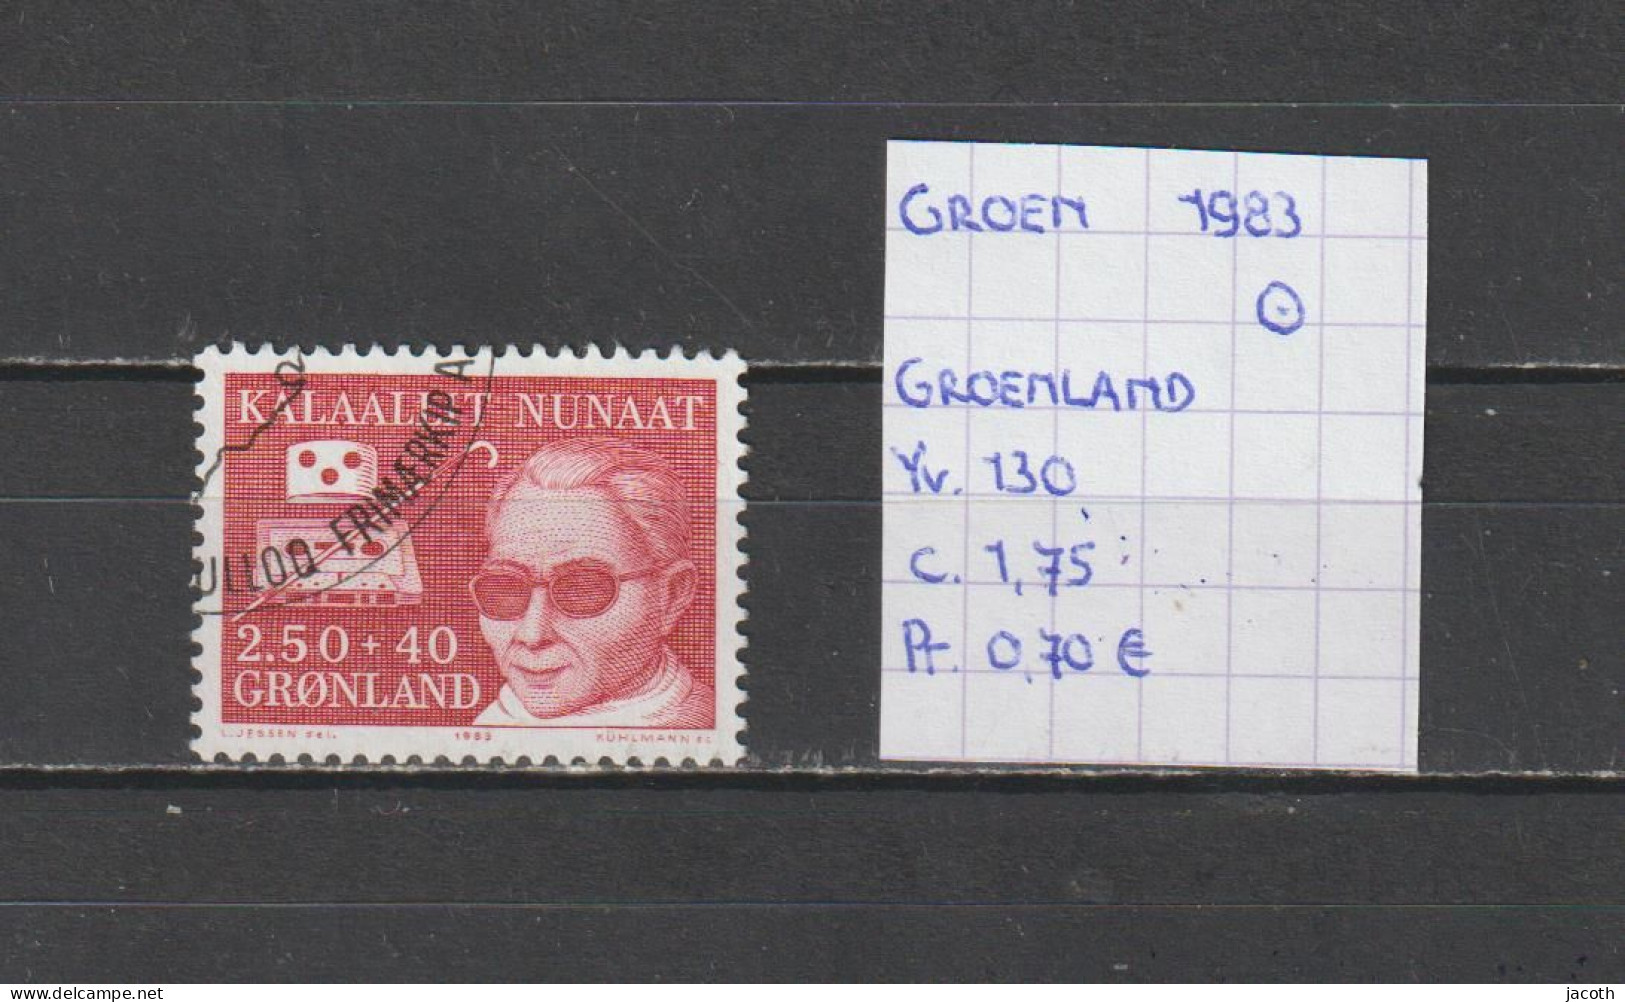 (TJ) Groenland 1983 - YT 130 (gest./obl./used) - Gebruikt